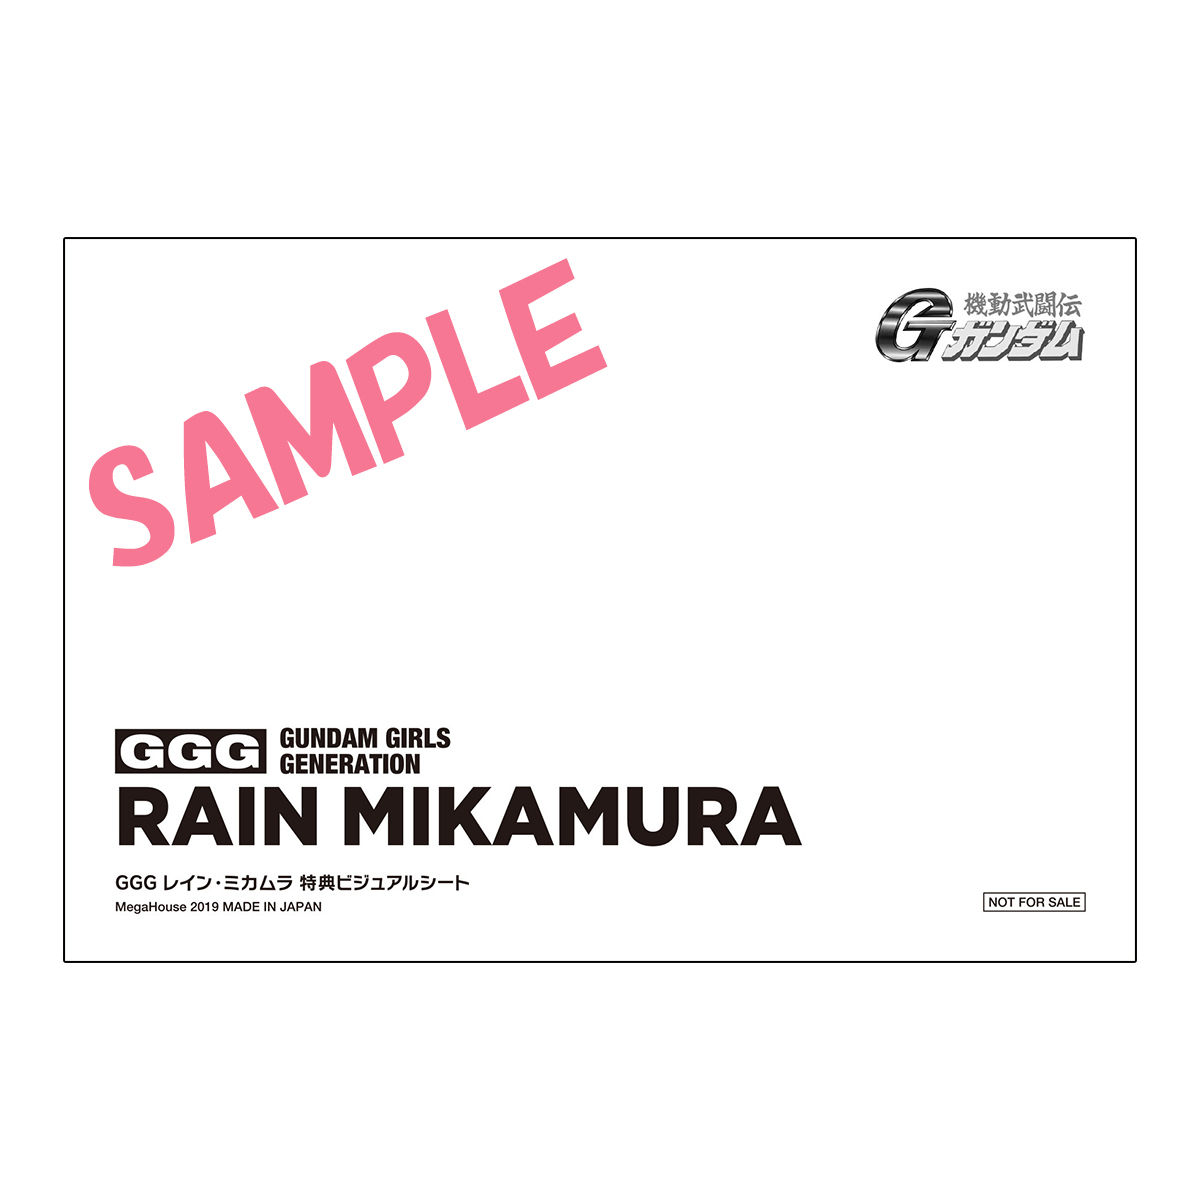 Megahobby Gundam Girls Generation Rain Mikamura